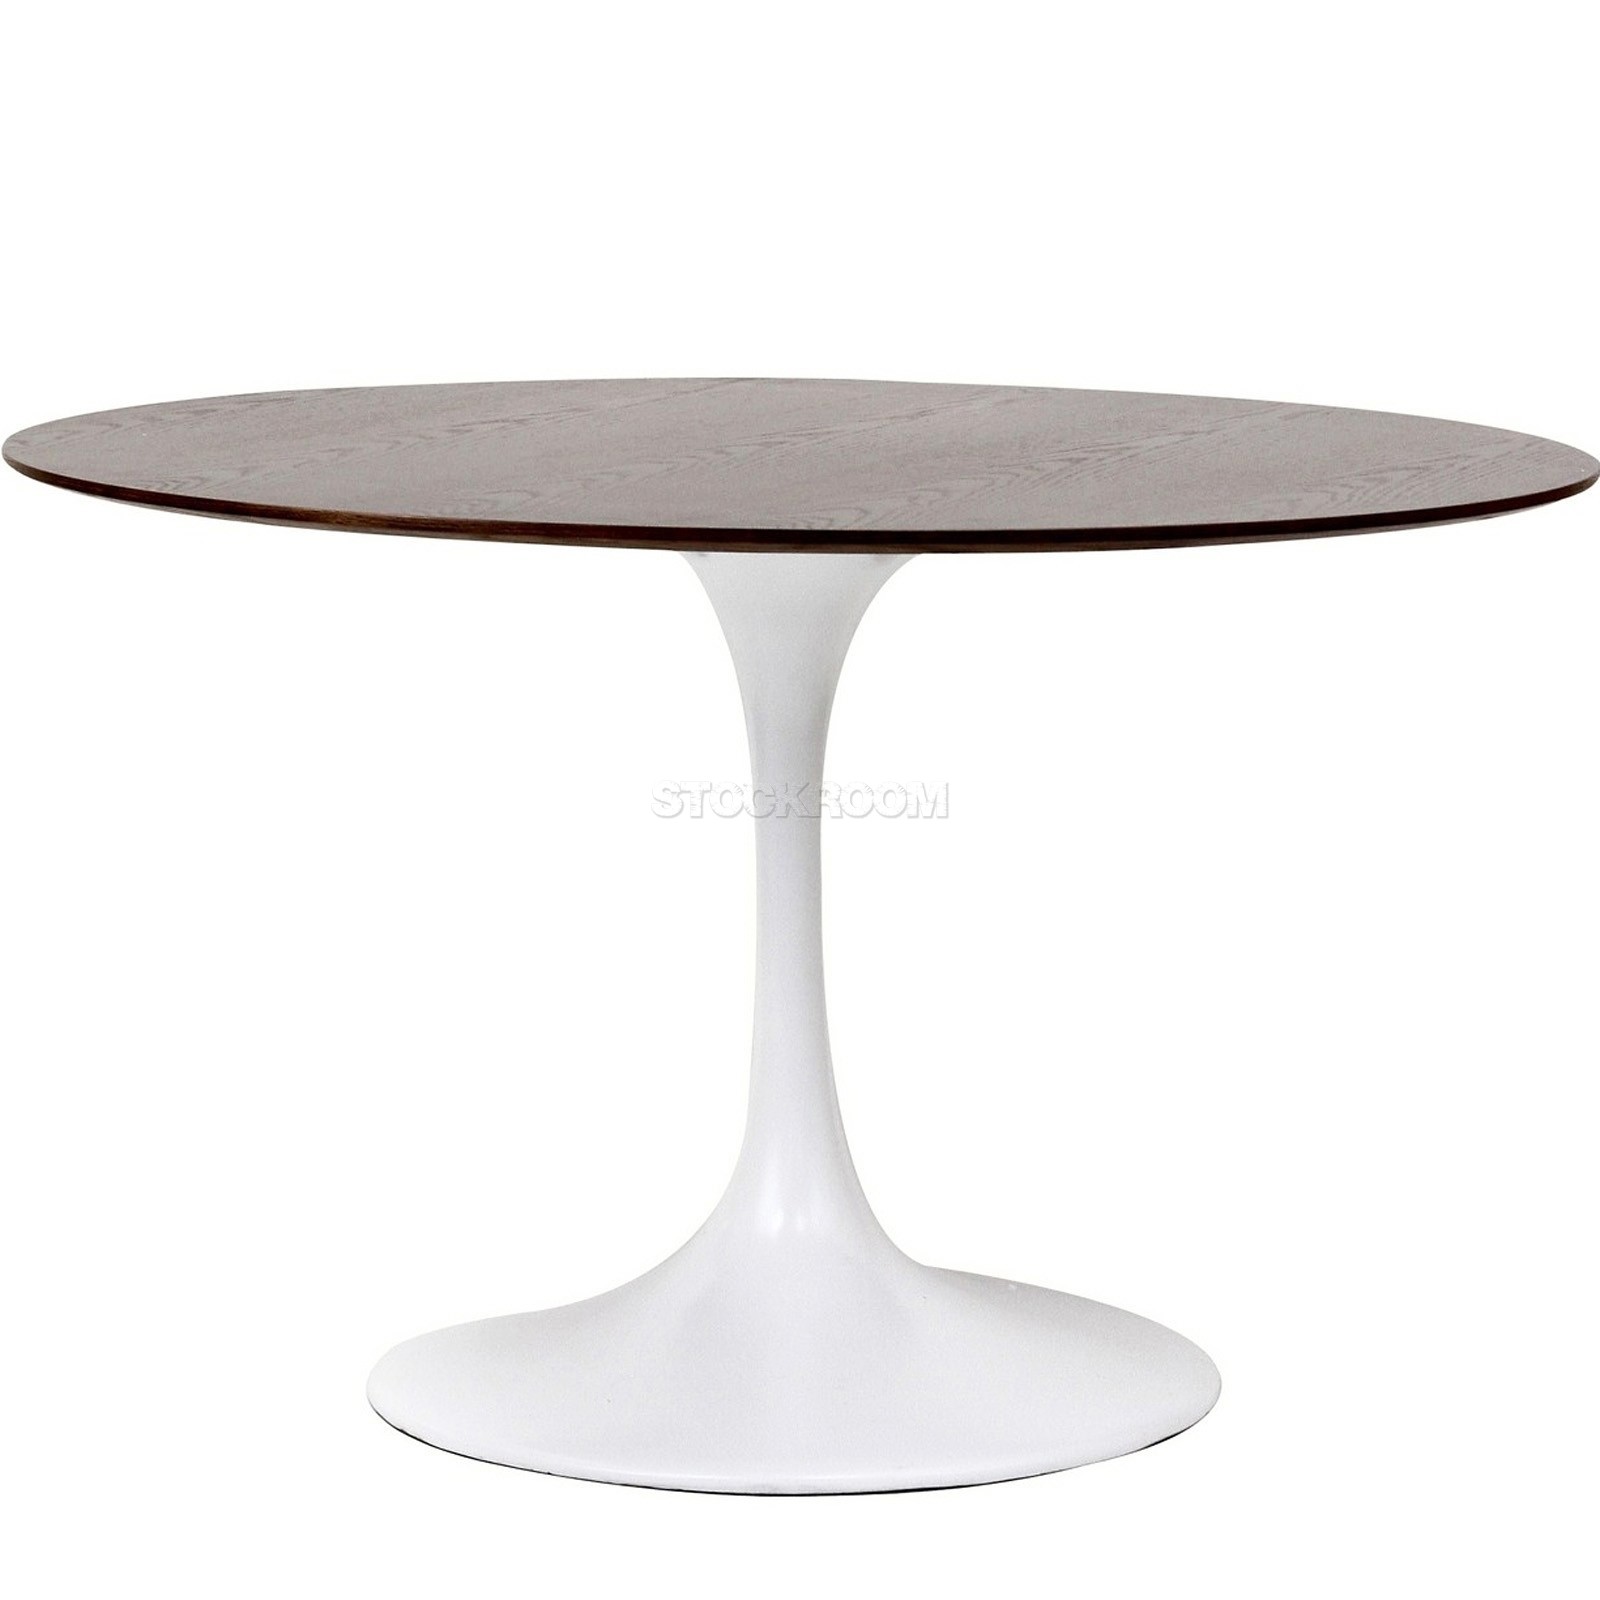 Eero Saarinen Tulip Style Round Table - Timber